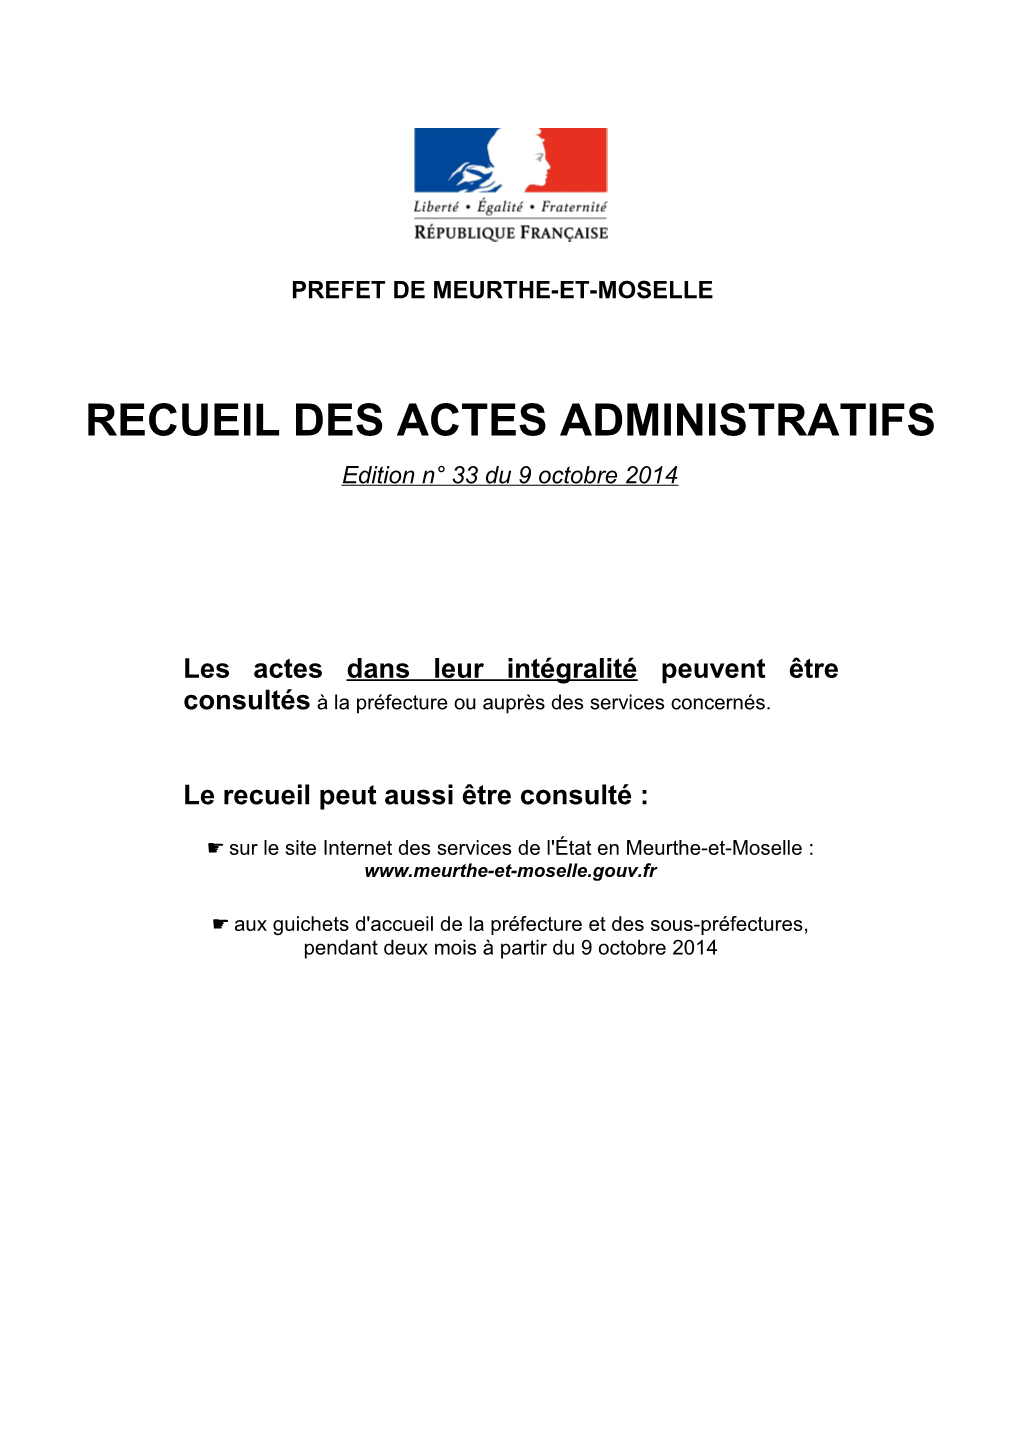 RECUEIL DES ACTES ADMINISTRATIFS Edition N° 33 Du 9 Octobre 2014